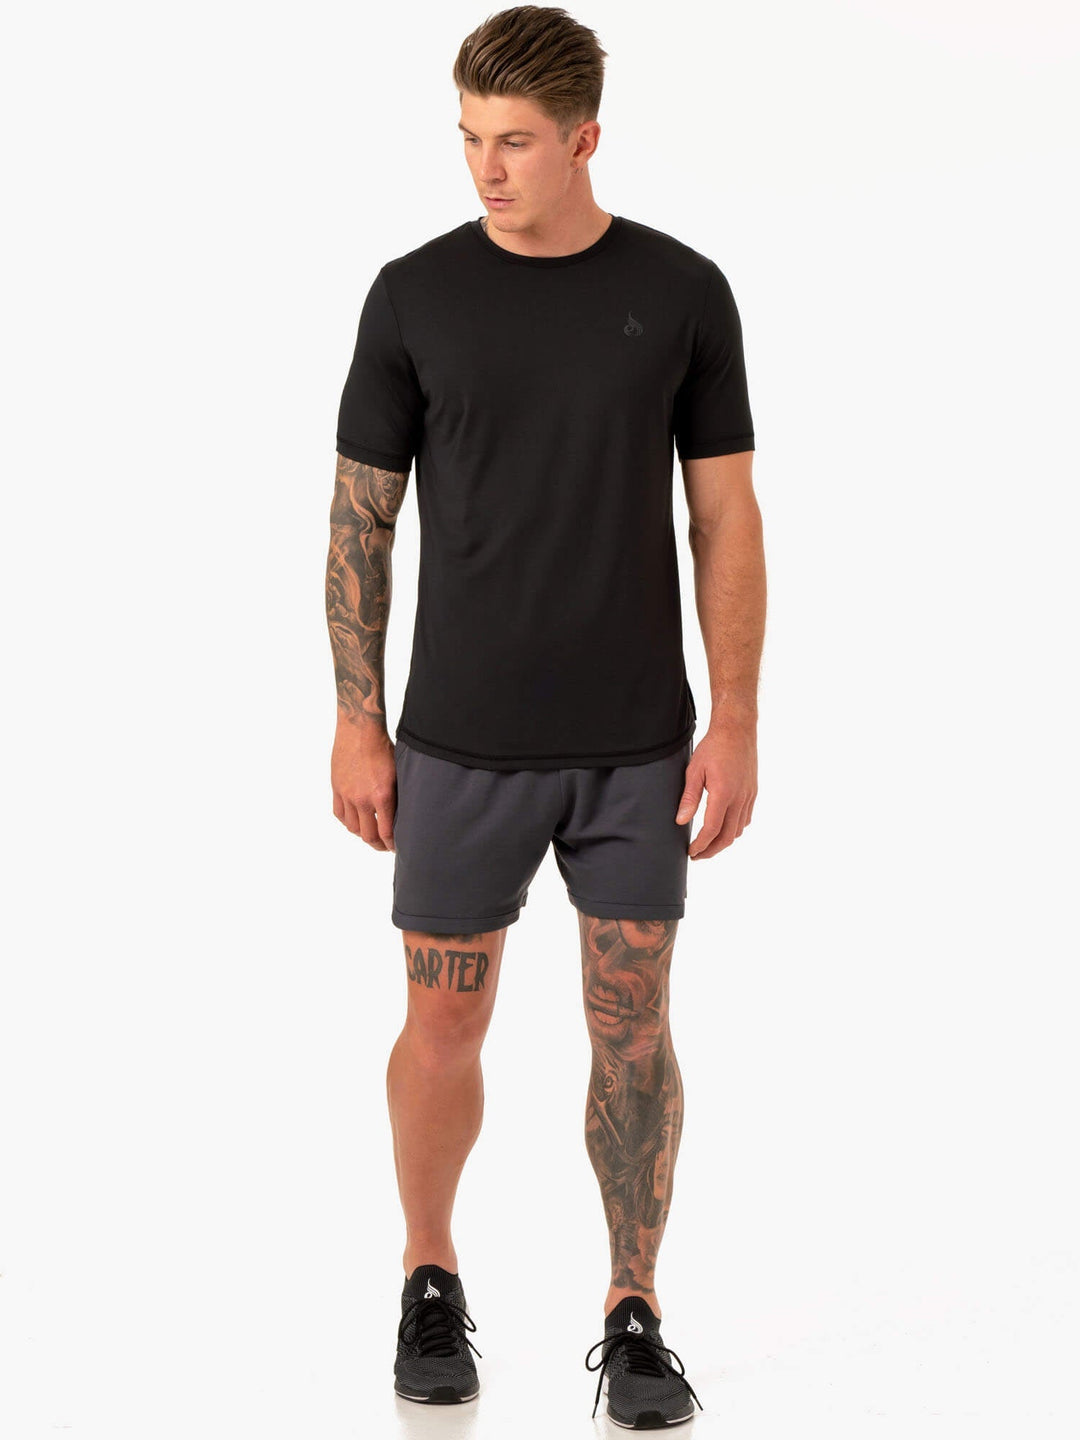 Optimal Mesh T-Shirt - Black Clothing Ryderwear 